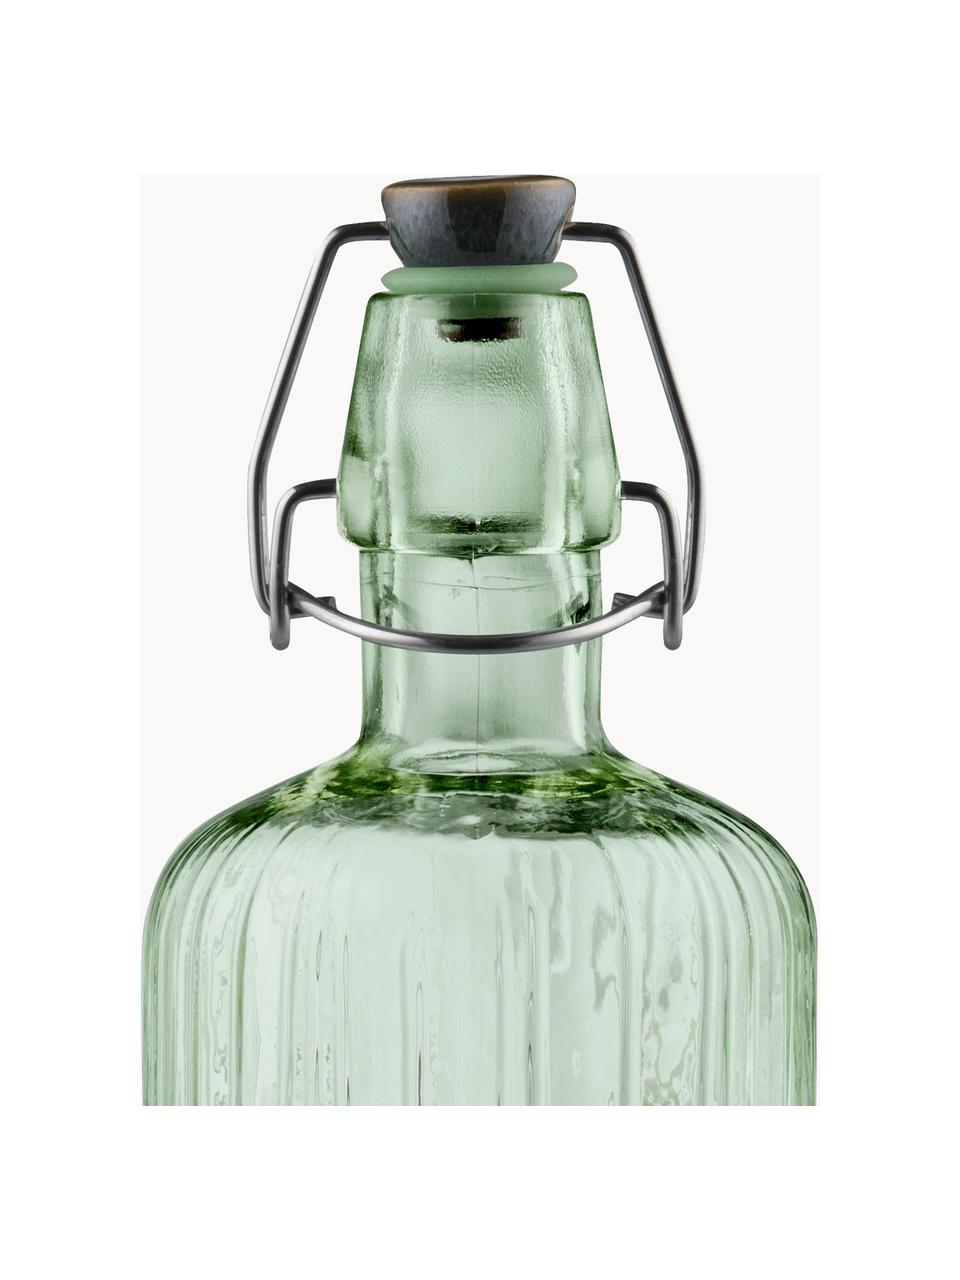 Glasflasche Kusintha, 1.2 L, Glas, Grün, 1.2 L